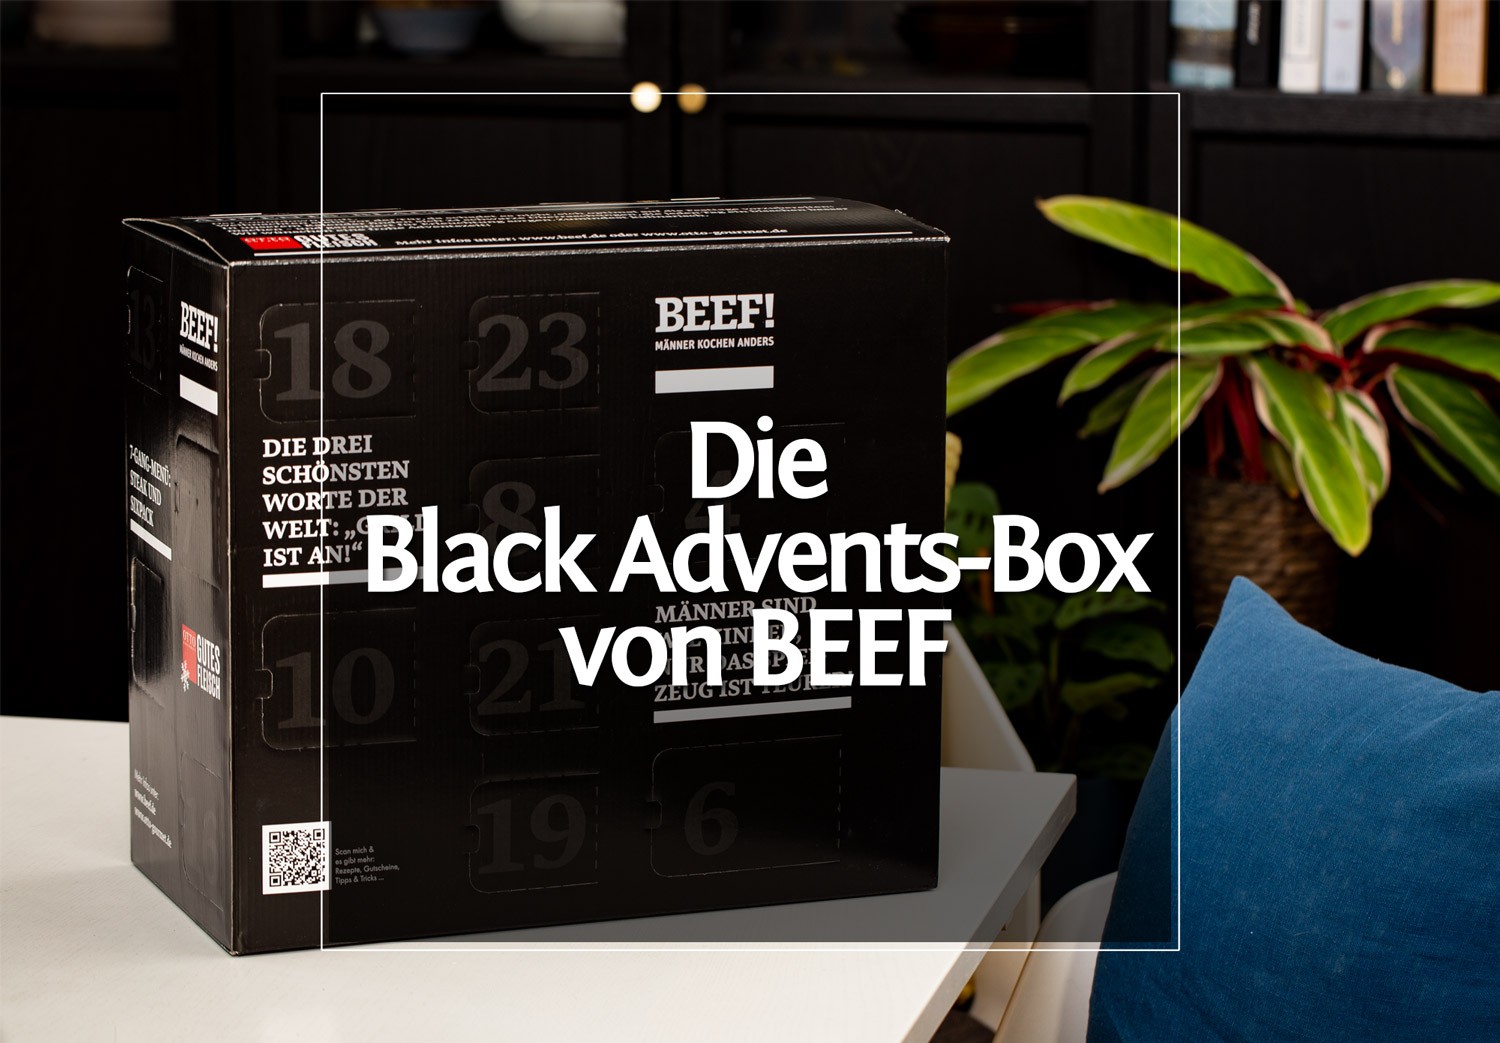 Die Advents- Black Box 2020